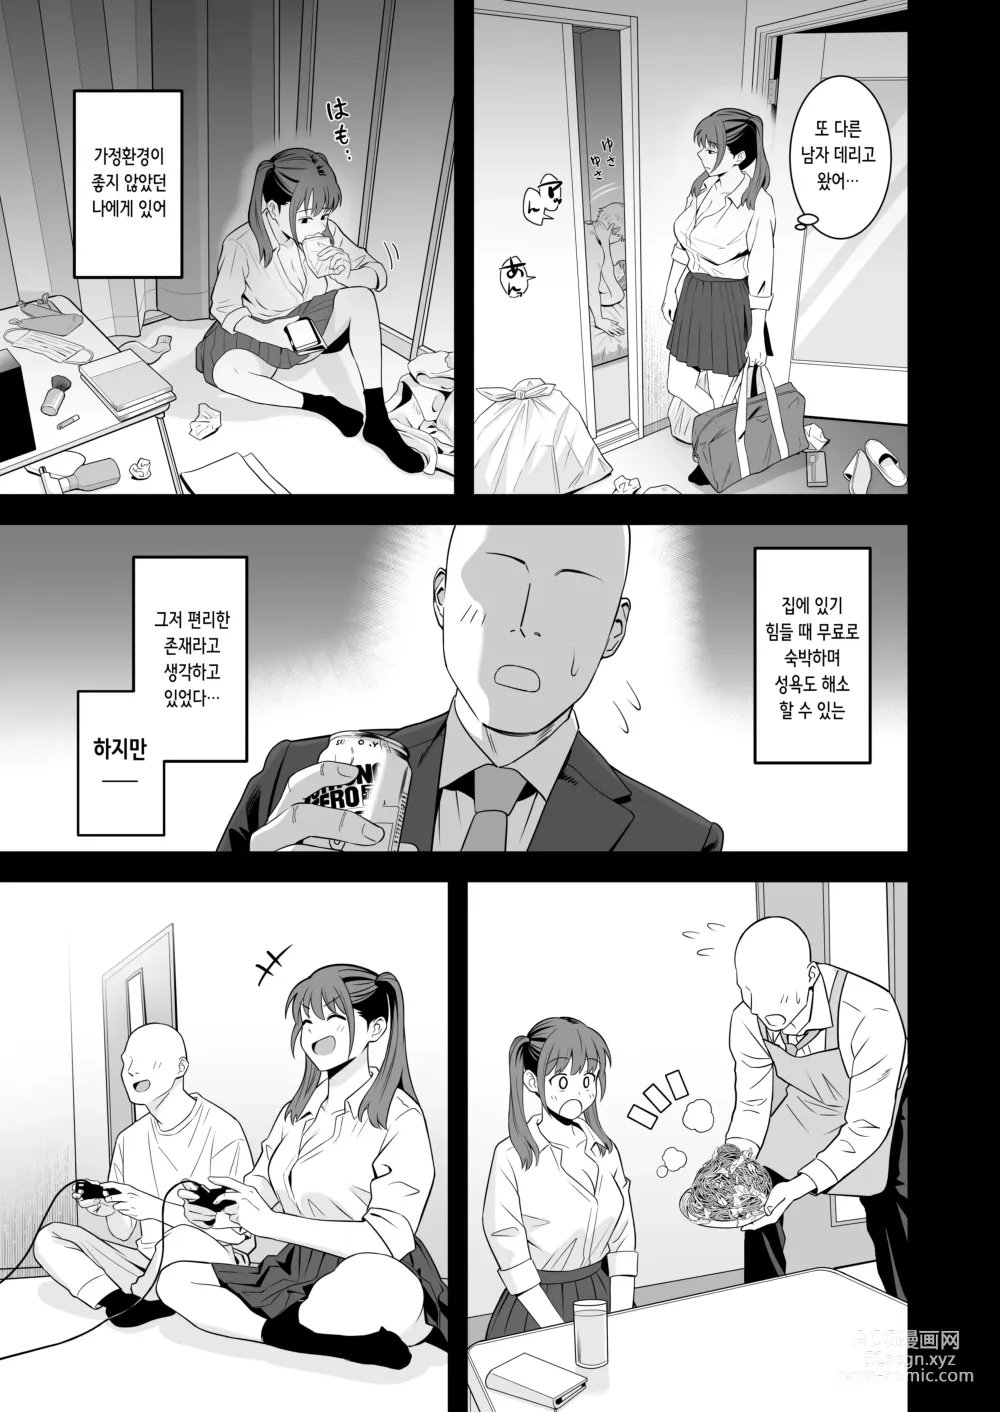 Page 33 of doujinshi 아저씨에게 형편 좋은 폭유 가출 갸루